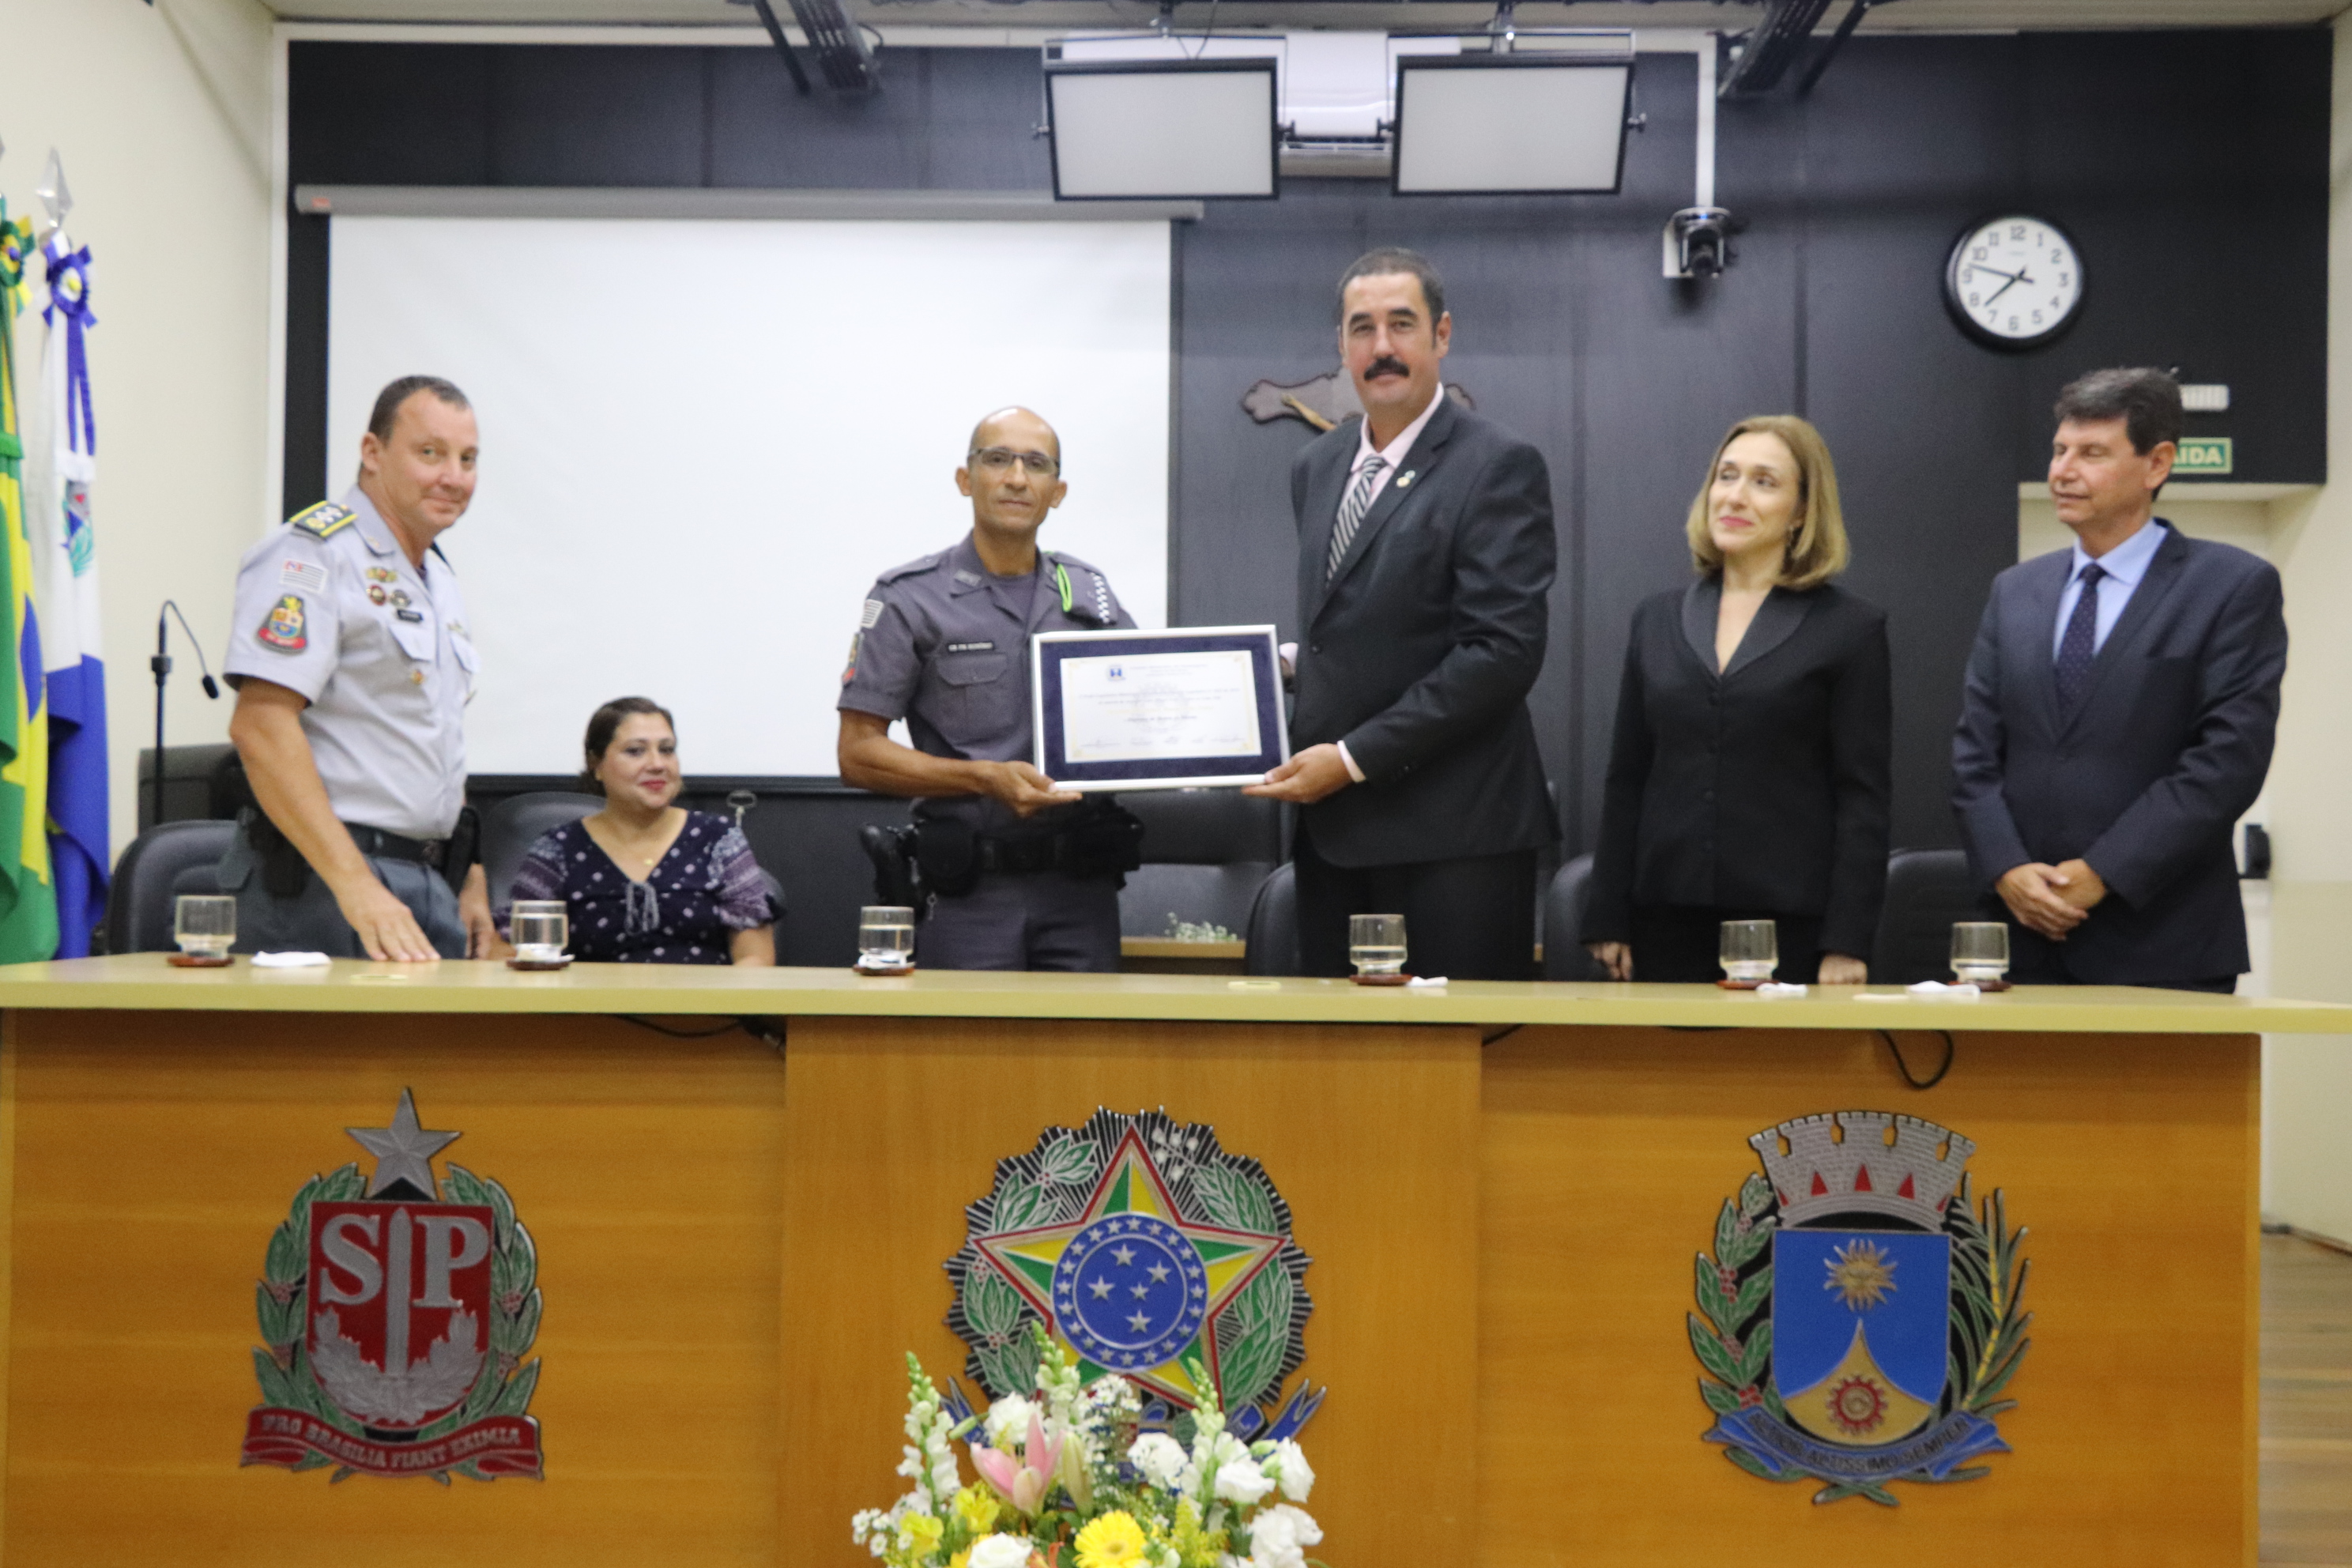 Cabo PM Honório recebe Diploma de Honra ao Mérito na Câmara Municipal (com vídeo)